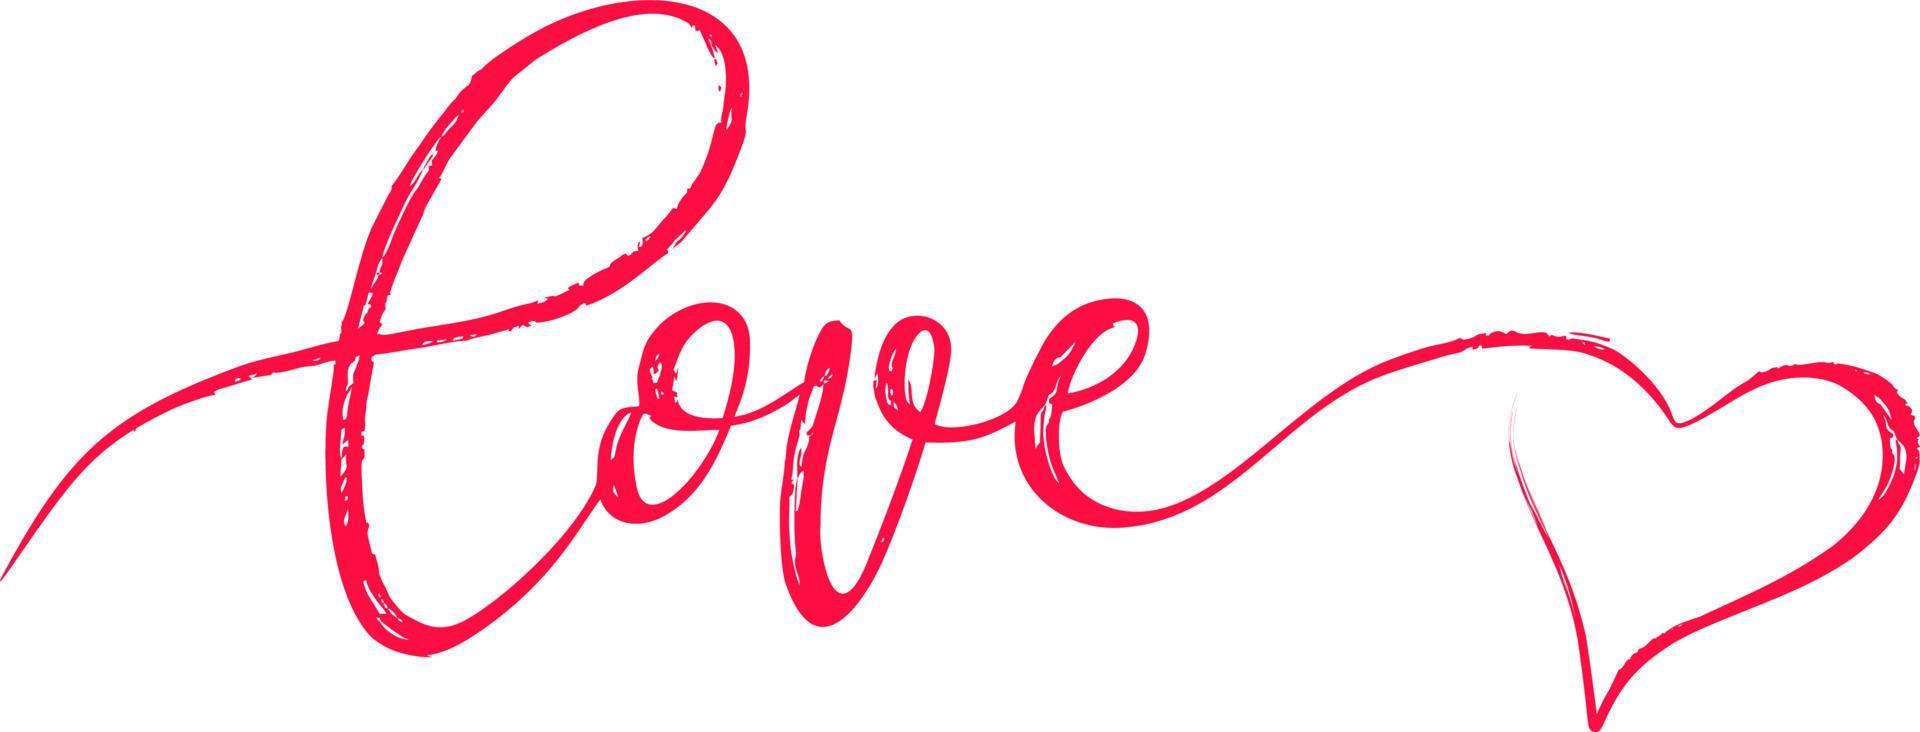 parola scritta calligraficamente amore con il cuore per il giorno di San Valentino vettore